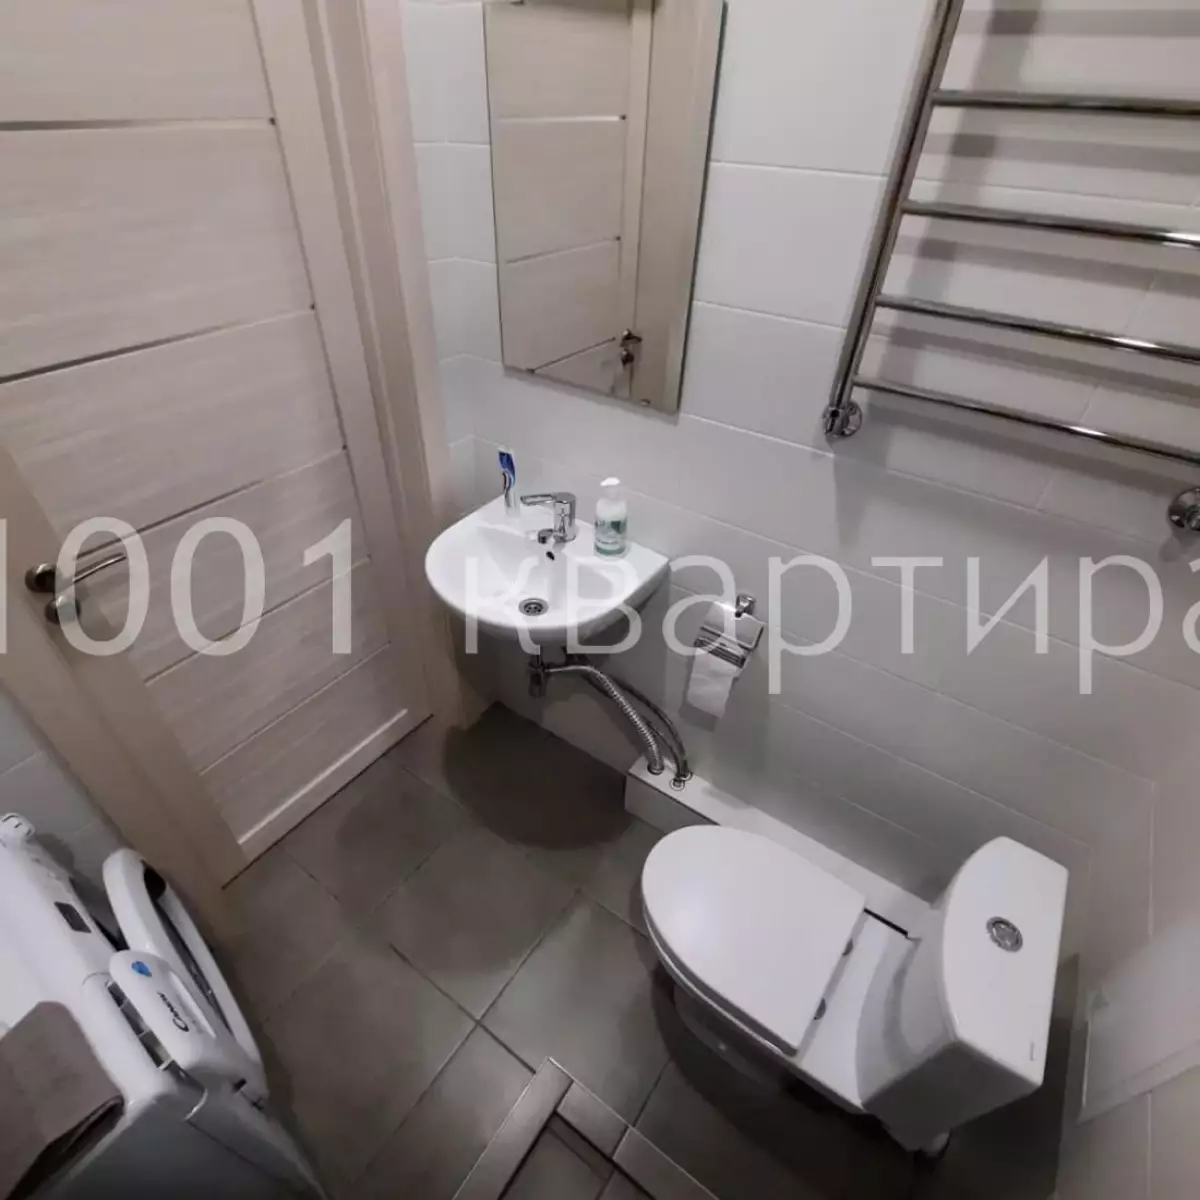 Вариант #139472 для аренды посуточно в Новосибирске Фрунзе, д.252/1 на 2 гостей - фото 10